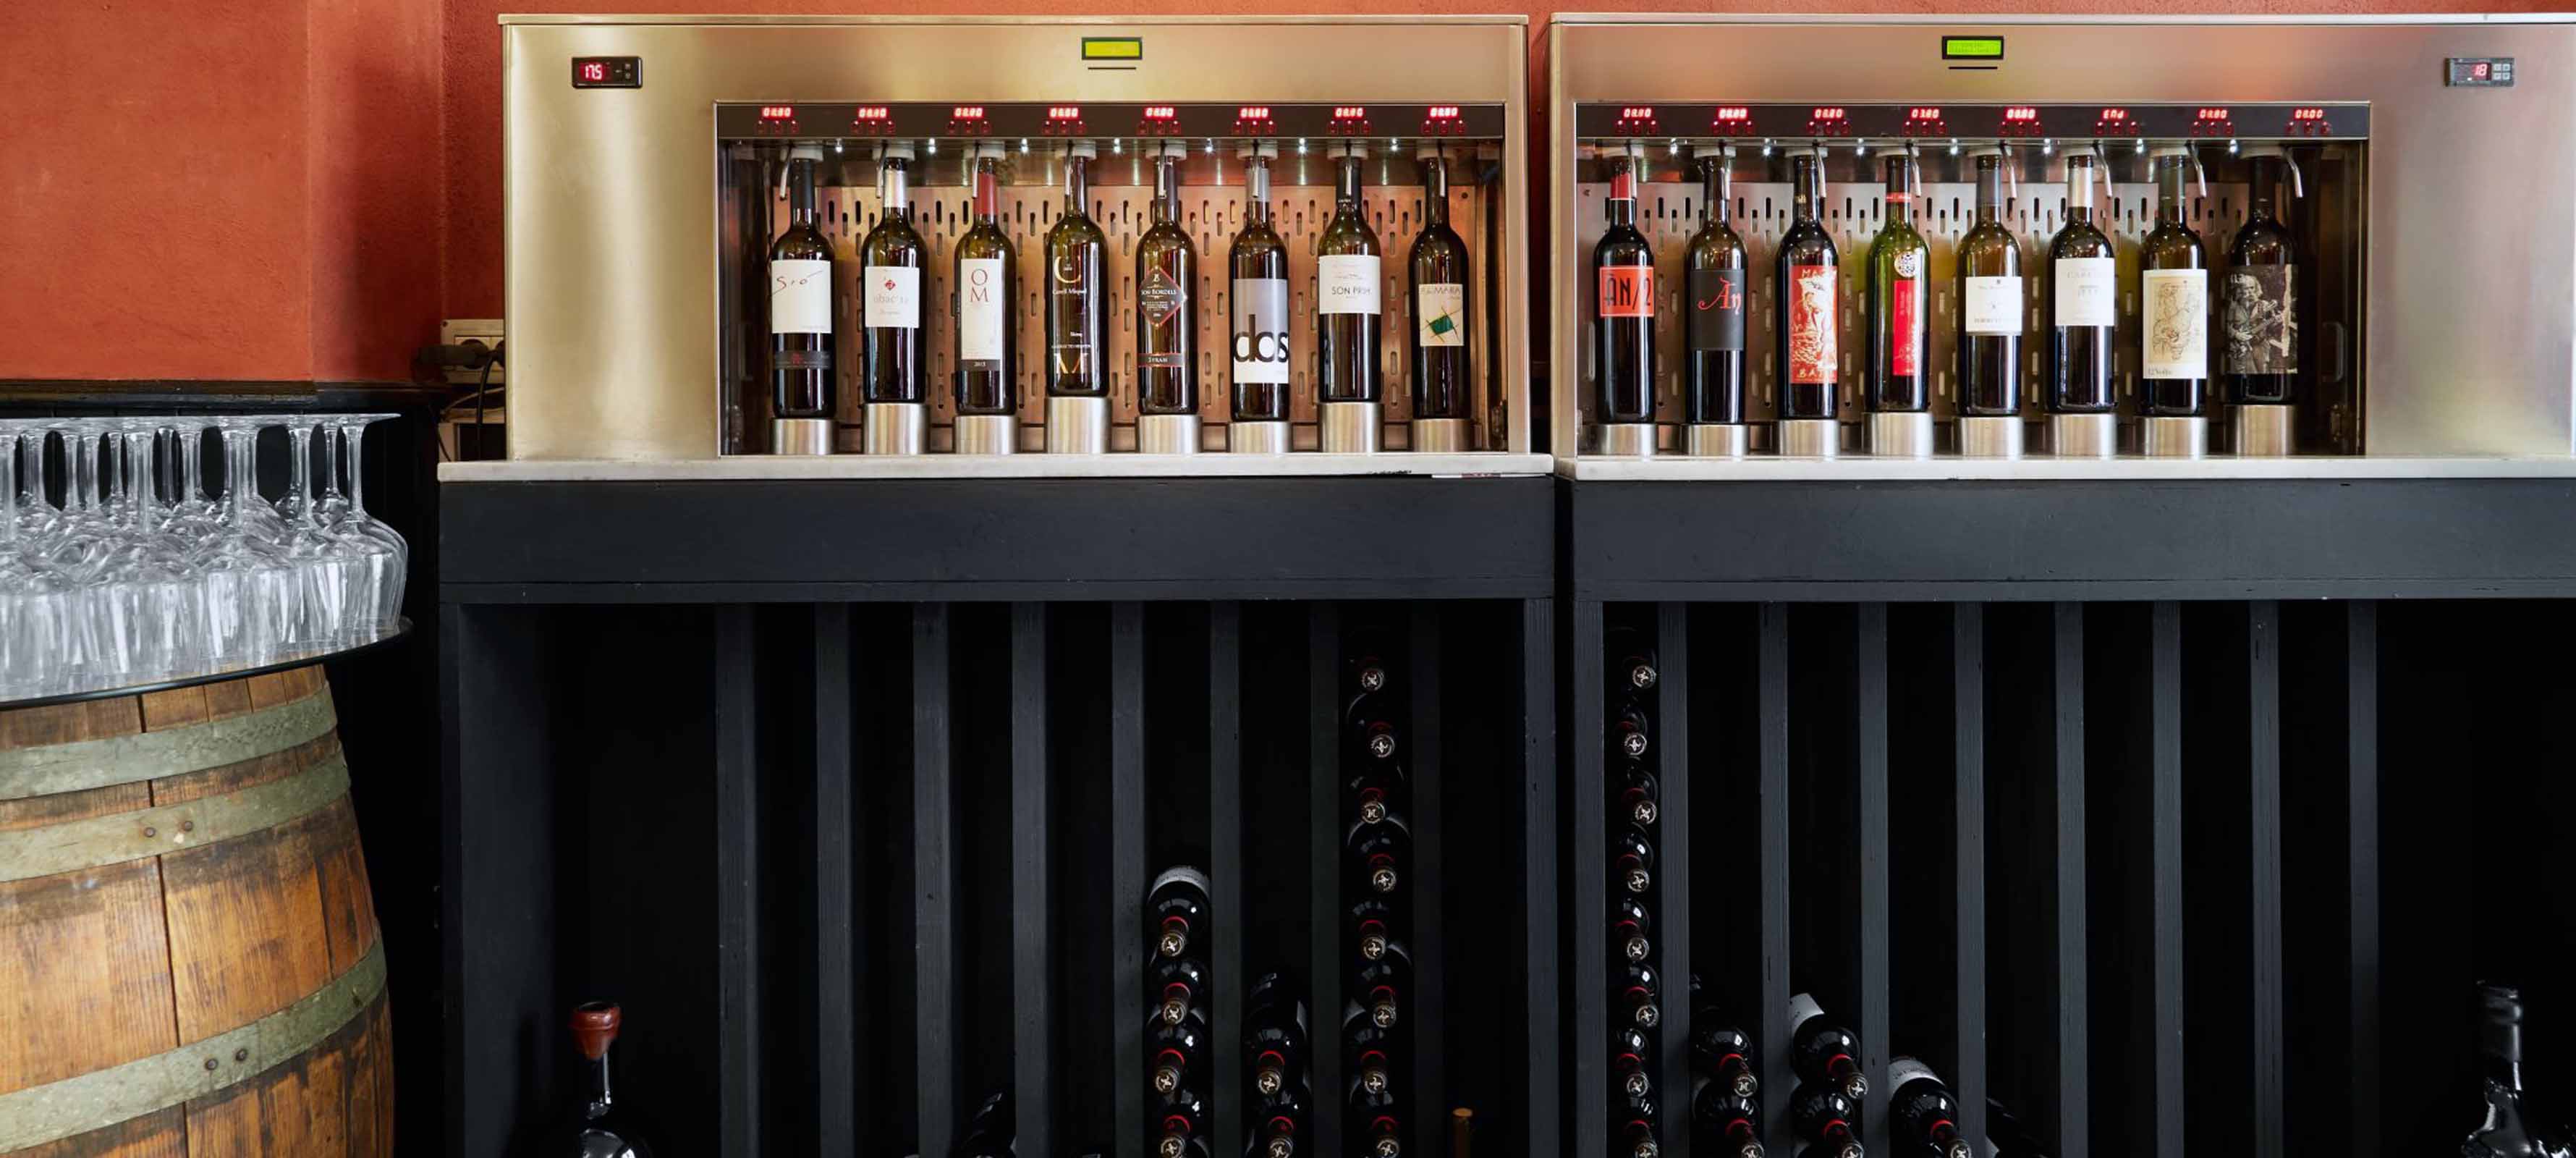 Wineing wine shelf